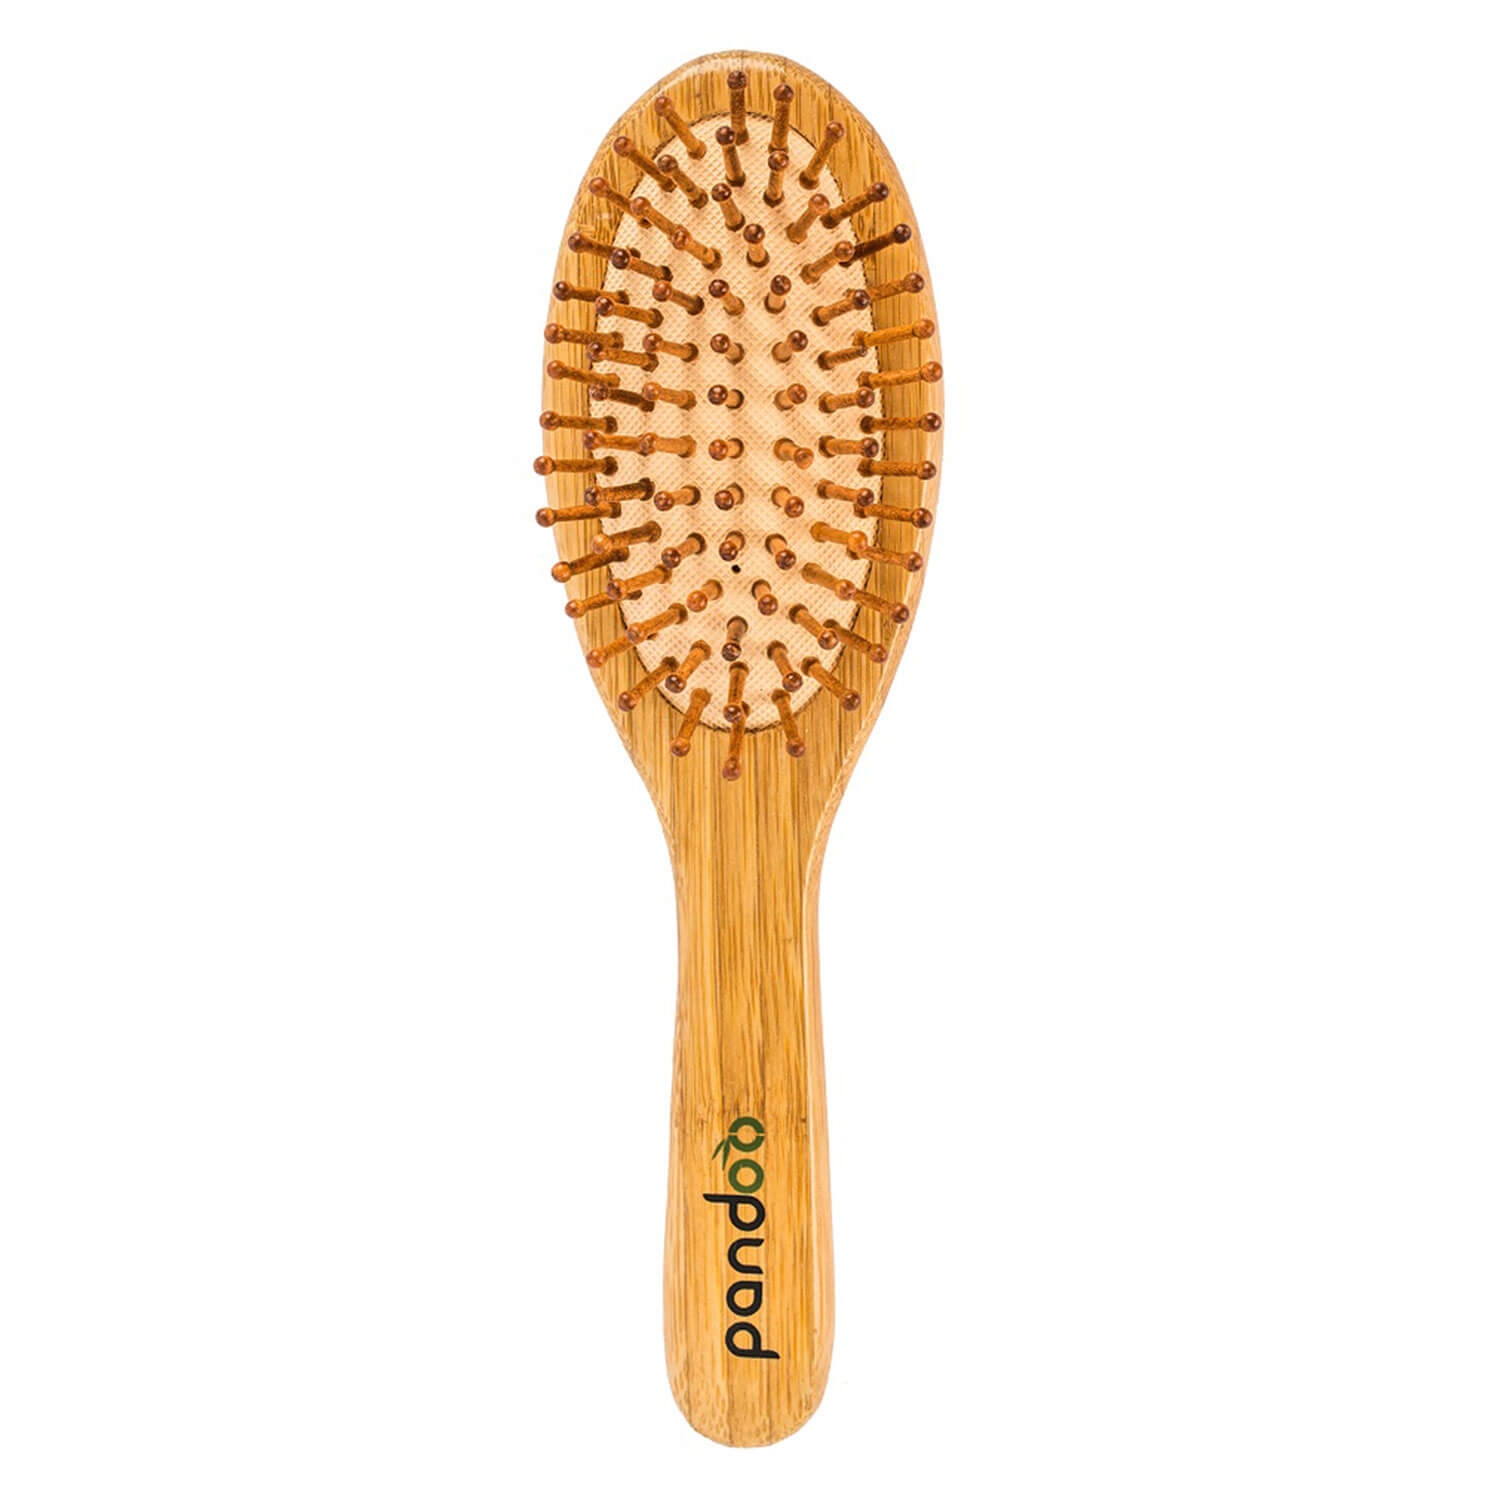 Produktbild von pandoo - Bambus Haarbürste